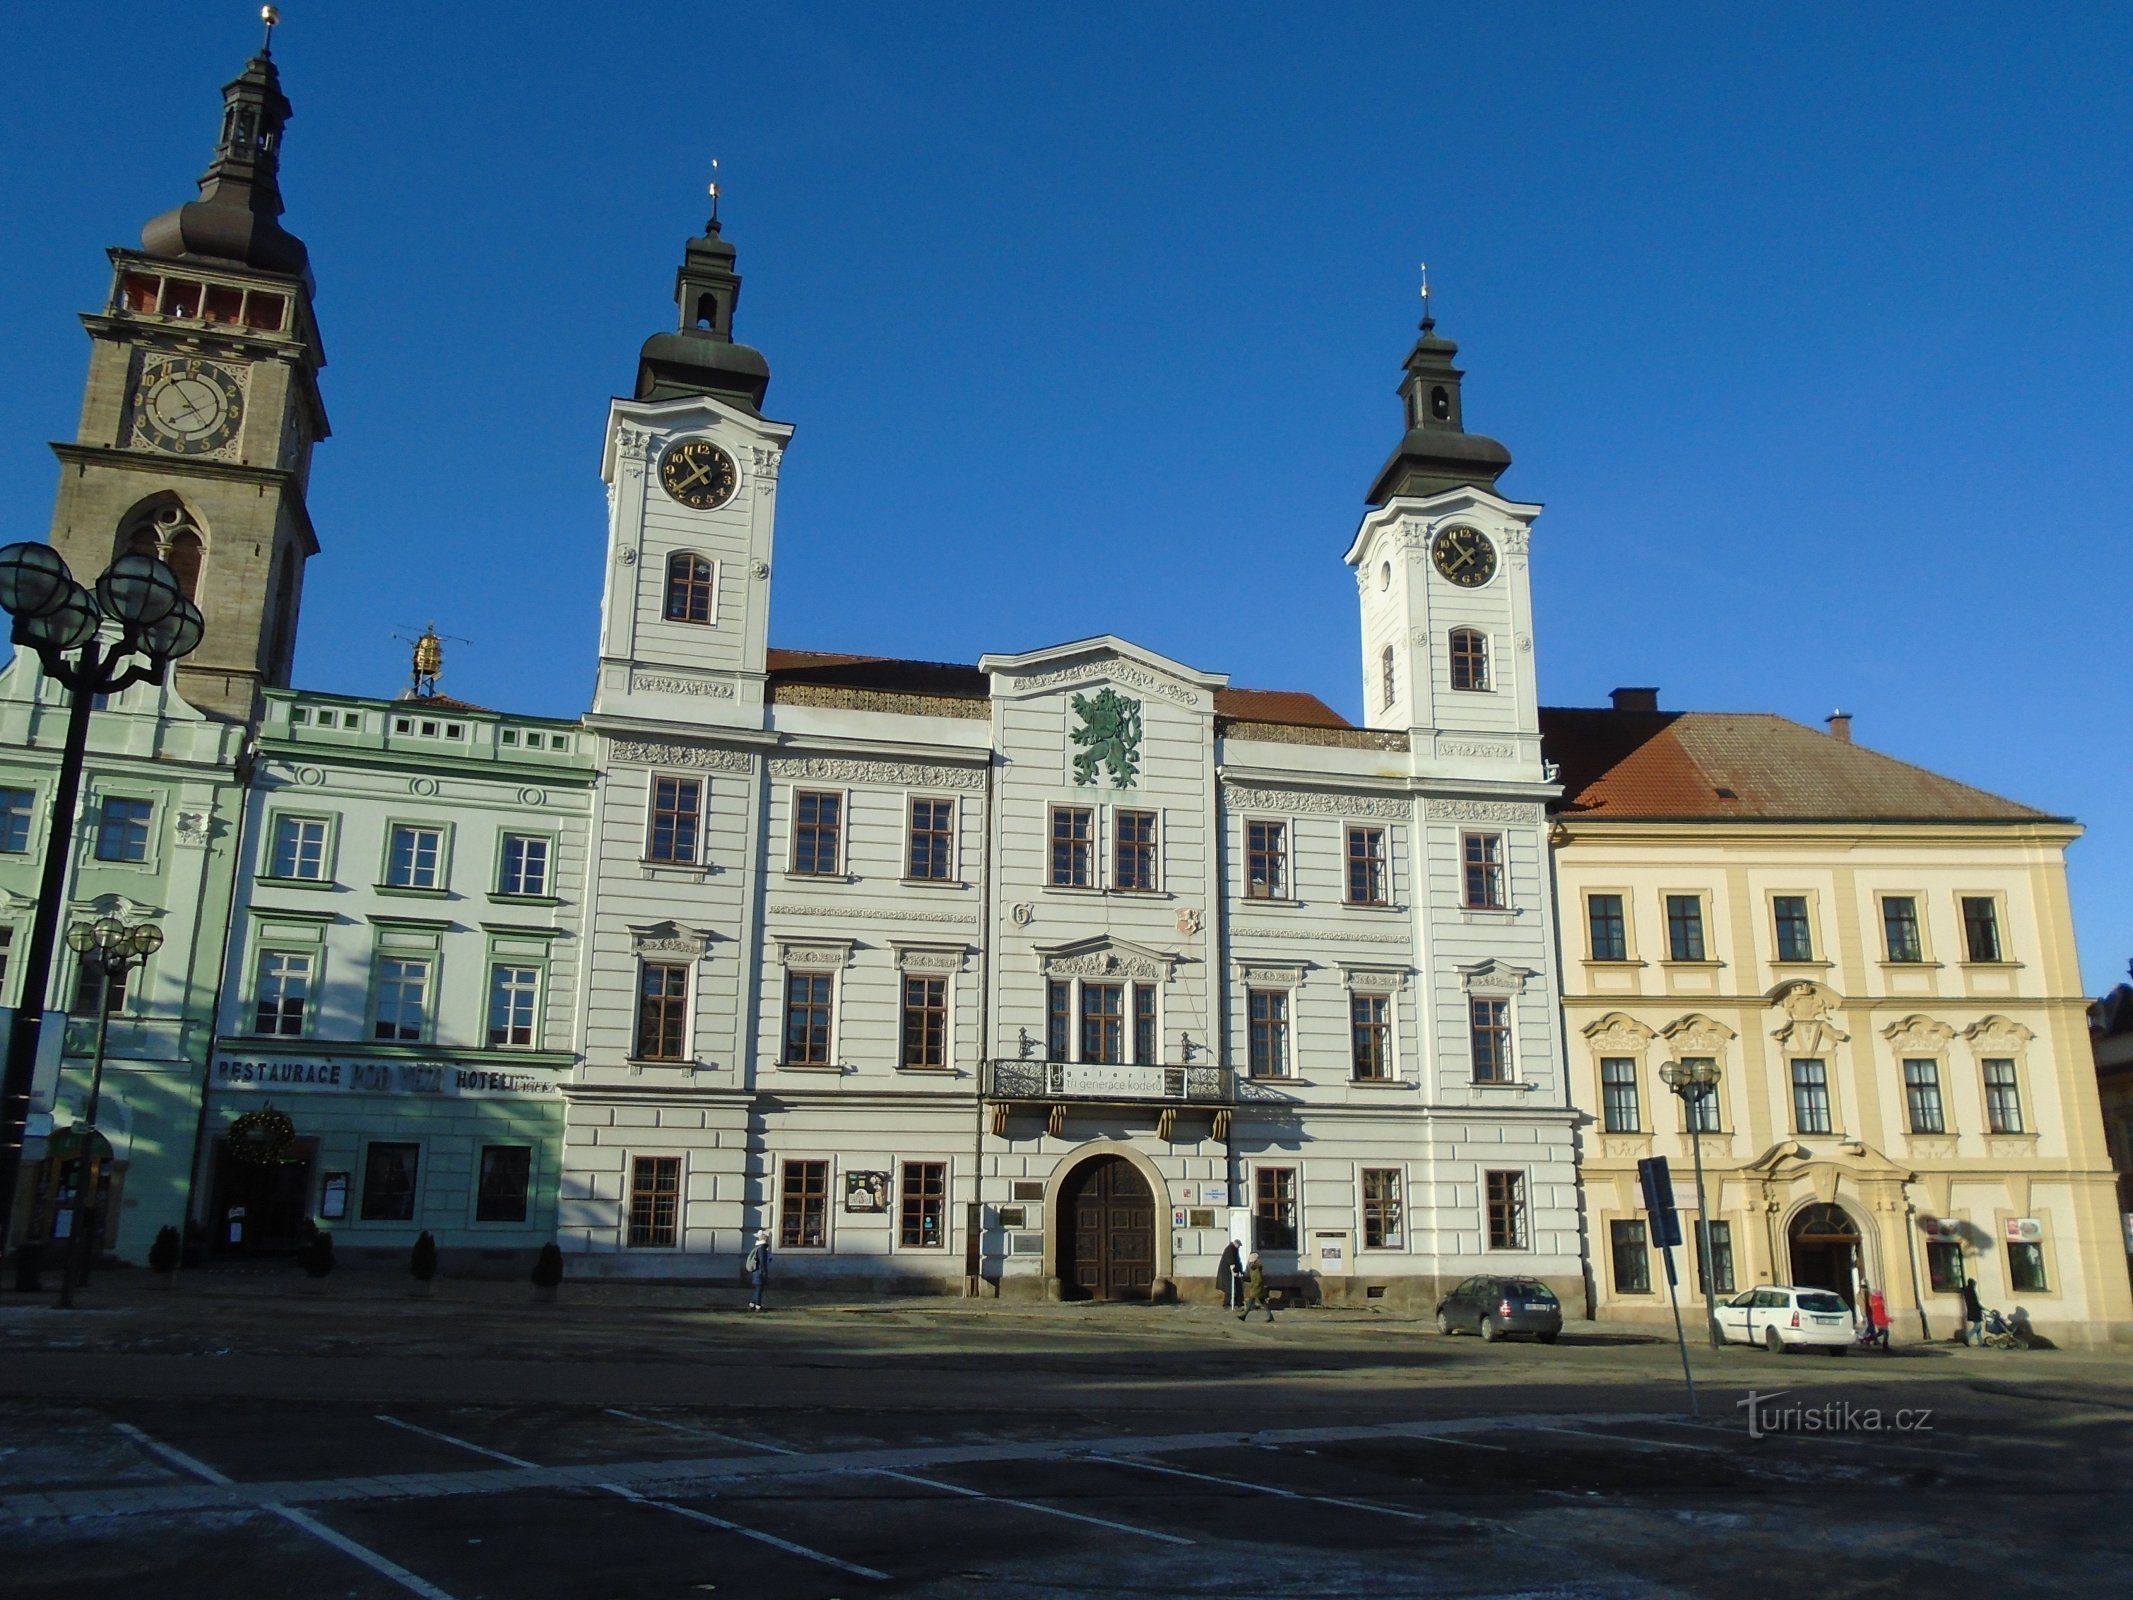 Velké náměstí nr. 1 (Hradec Králové, 10.12.2017. oktober XNUMX)